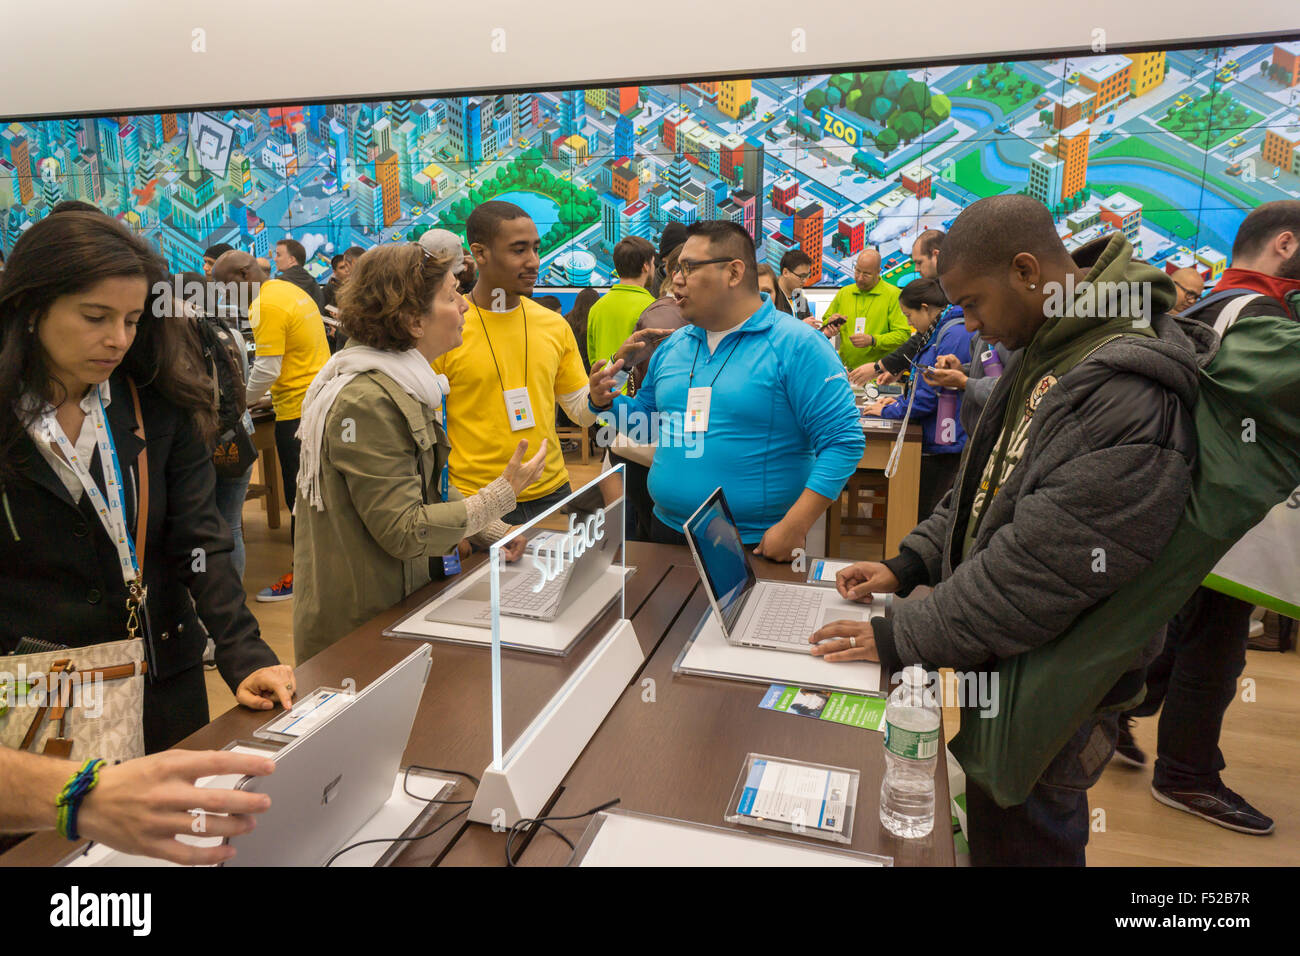 New York, USA. 26 octobre, 2015. Shoppers essayez Microsoft Surface ordinateurs portables au flagship store de la Cinquième Avenue à New York à l'ouverture, lundi, Octobre 26, 2015. Les visiteurs d'utilisation des ordinateurs portables, Surface Xboxes et autres produits de Microsoft et d'autres fabricants. C'est la 113e microsoft store , c'est plus gros à 22 000 pieds carrés et le seul des deux qui n'est pas situé dans un centre commercial. Crédit : Richard Levine/Alamy Live News Banque D'Images